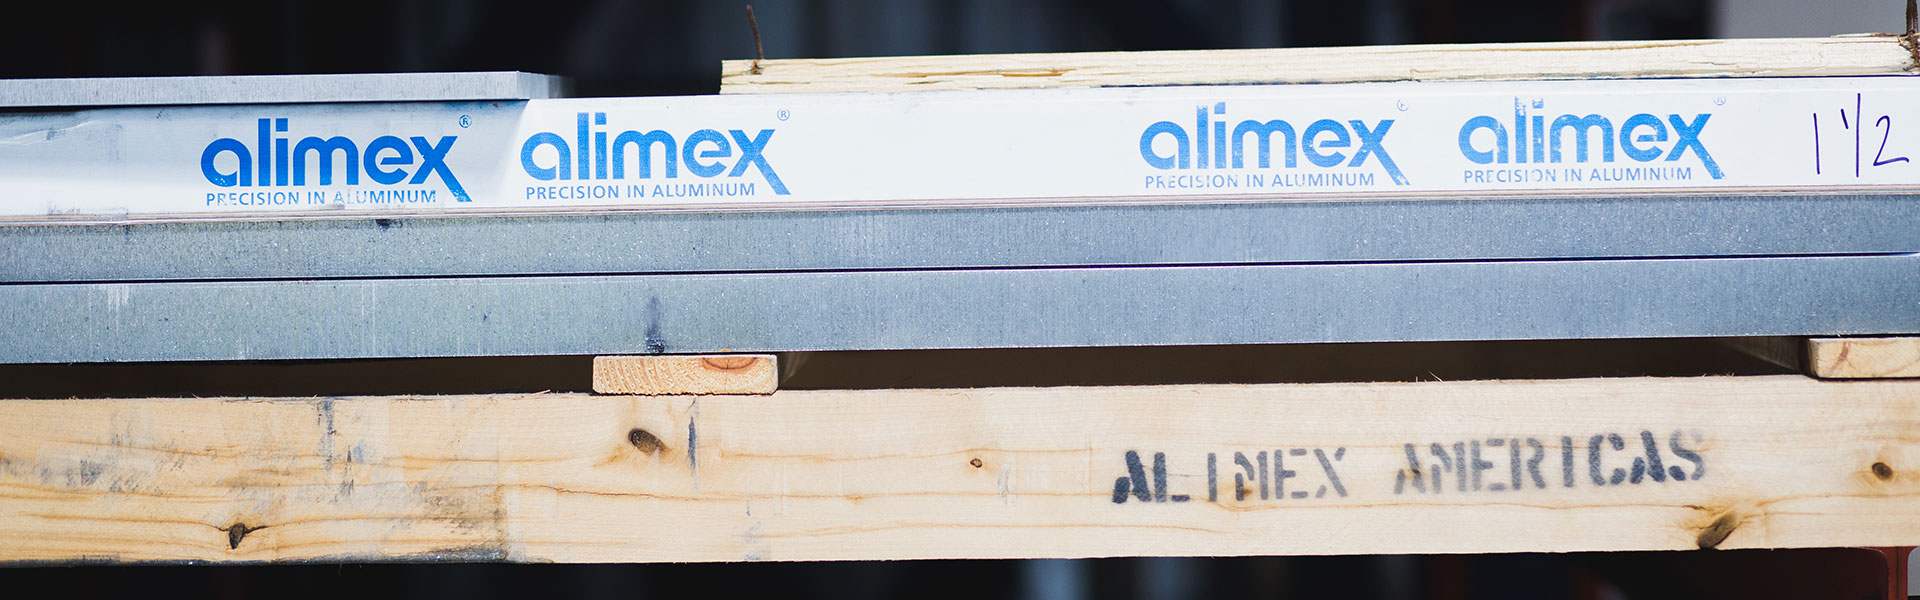 Alimex Aluminum